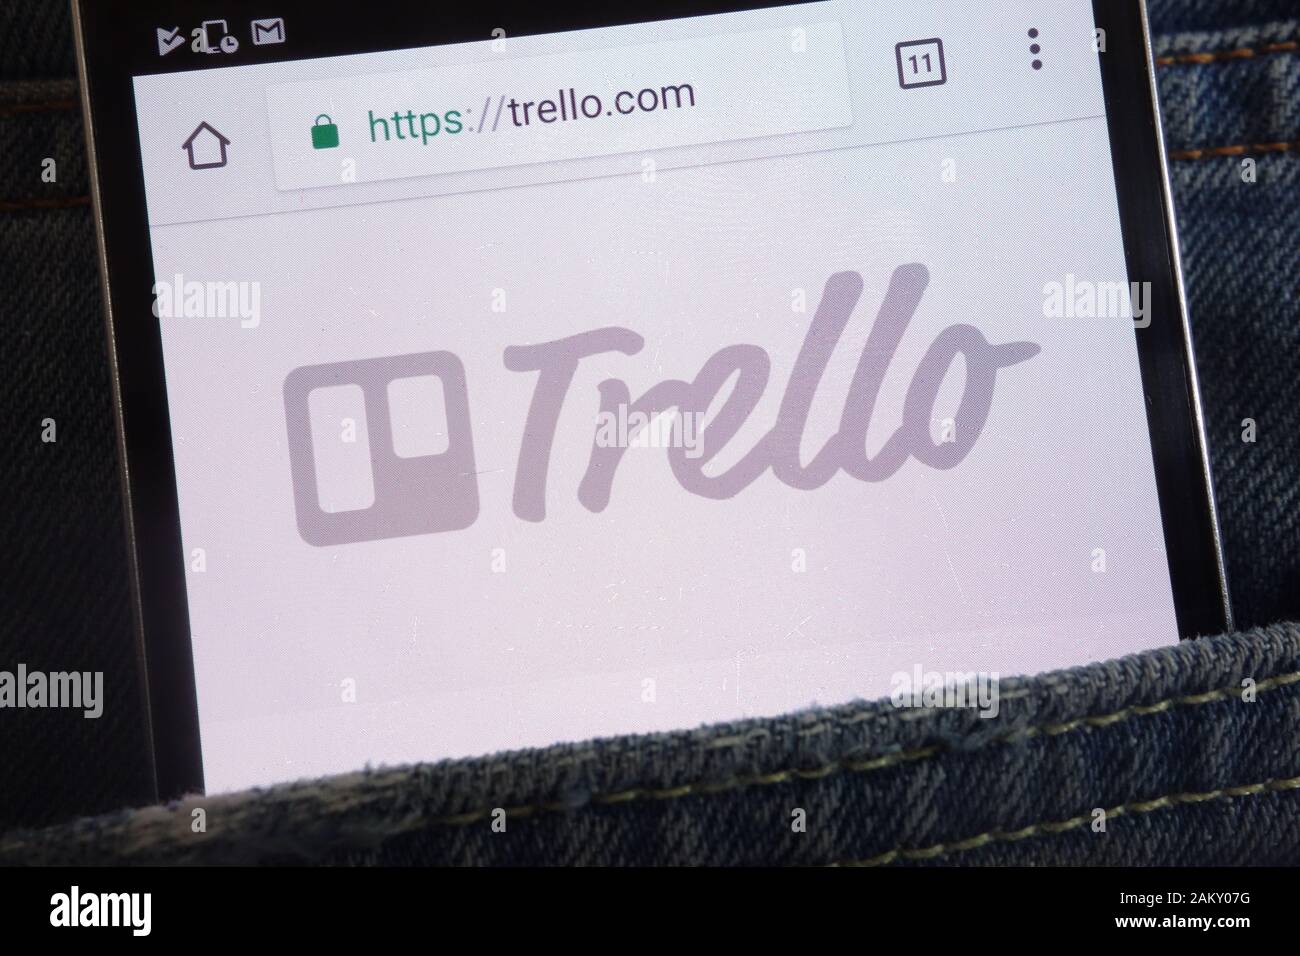 Site web affiché sur smartphone Trello cachés dans la poche de jeans Banque D'Images